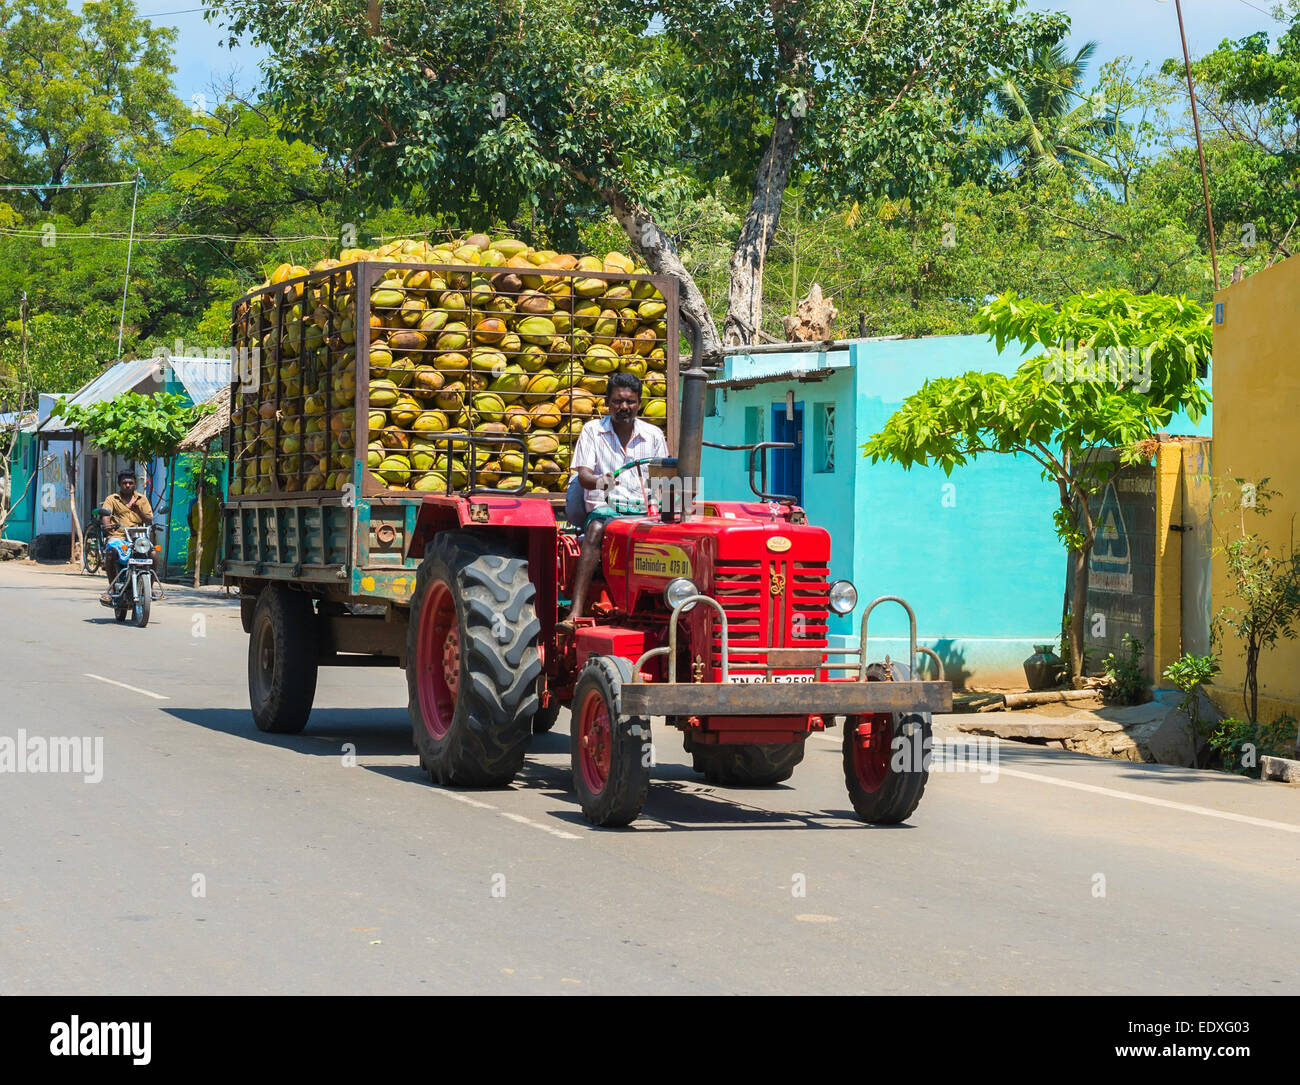 MADURAI, India - 17 febbraio: rurale indiano uomo corse su una vettura con noci di cocco. India, nello Stato del Tamil Nadu, nei pressi di Madurai. Febbraio 17, 2013. Foto Stock